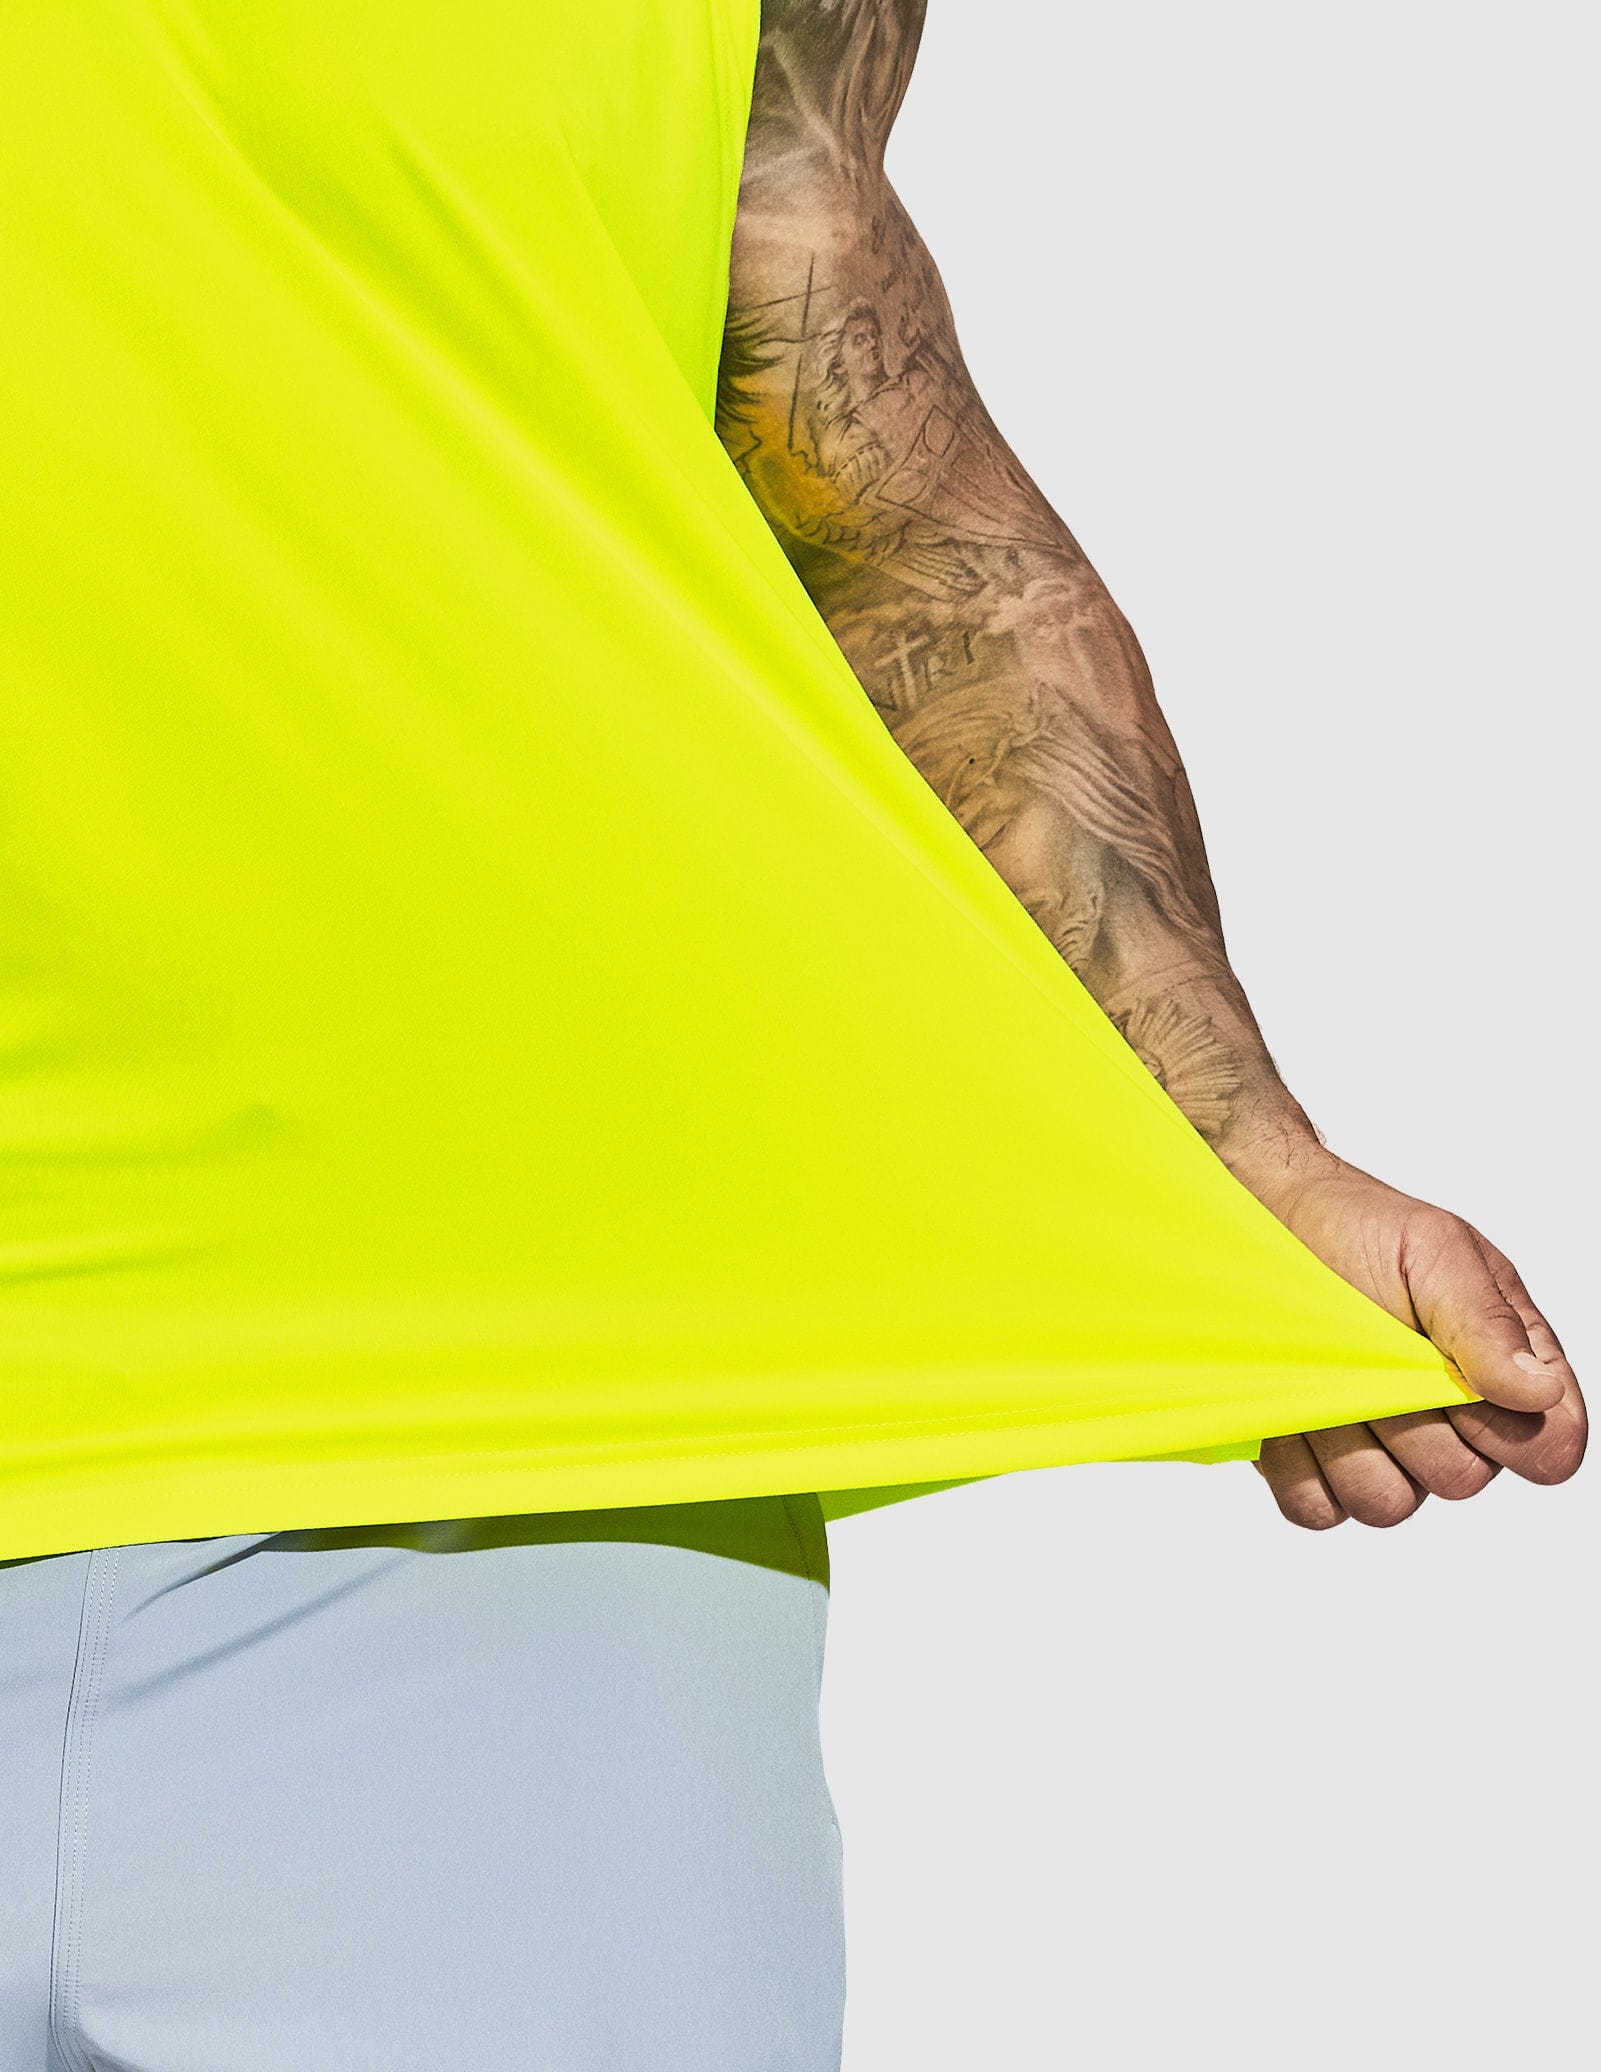 Men's Lightweight UPF 50+ Sun Shirts Quick Dry Tank Tops Men's Tank Top MIER